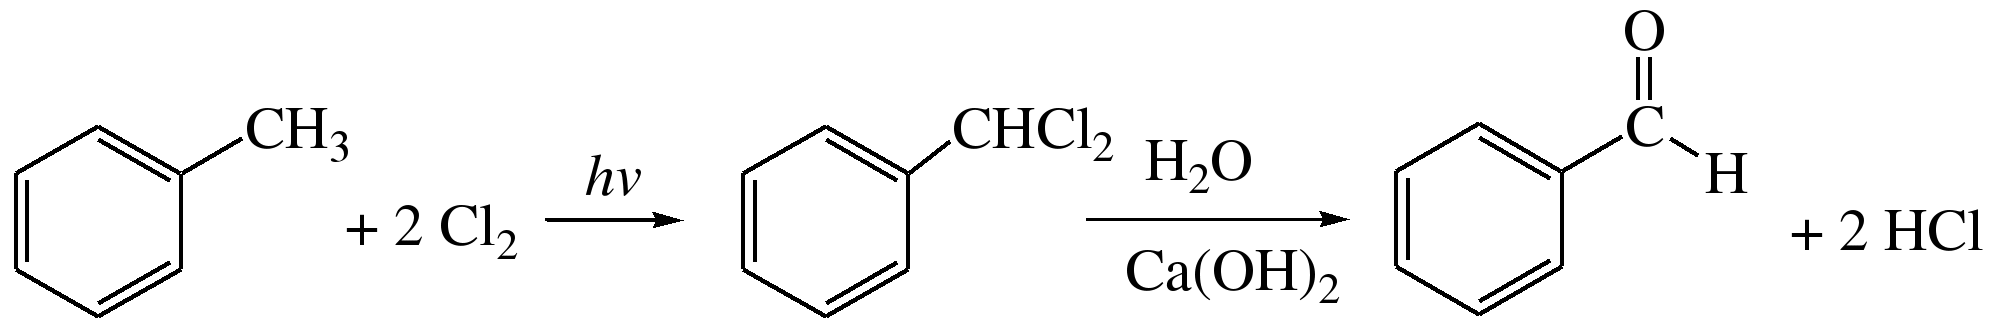 Бензальдегид получение из толуола в 2 стадии. Хлористый бензил бензальдегид. Из толуола бензальдегид в 2 стадии. Получение бензальдегида из хлорметилбензола. Бензол альдегид